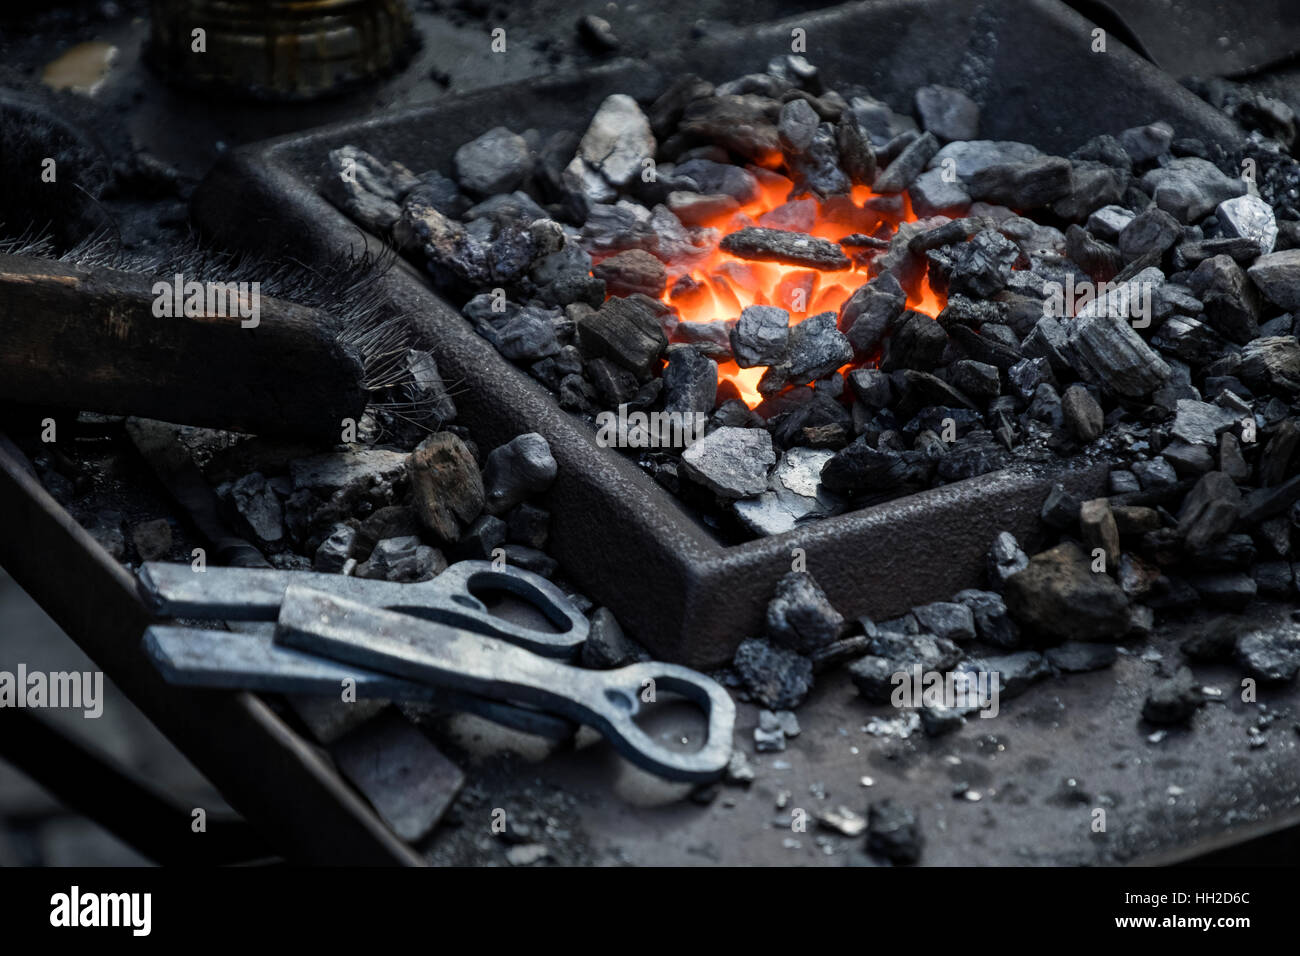 Blacksmiths coals burning for iron work Stock Photo